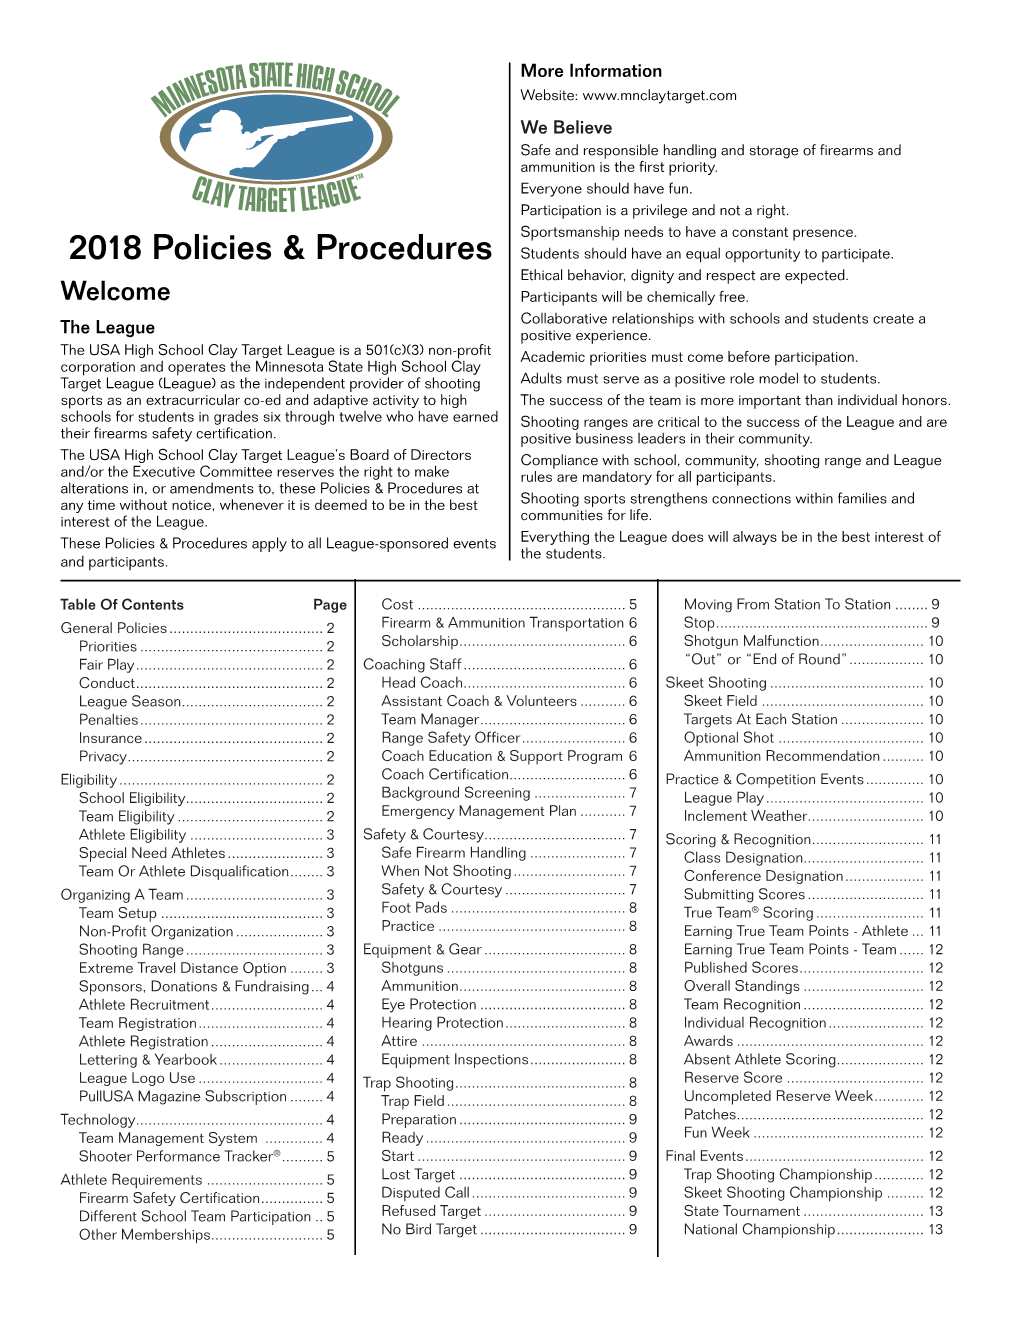 2018 Policies & Procedures